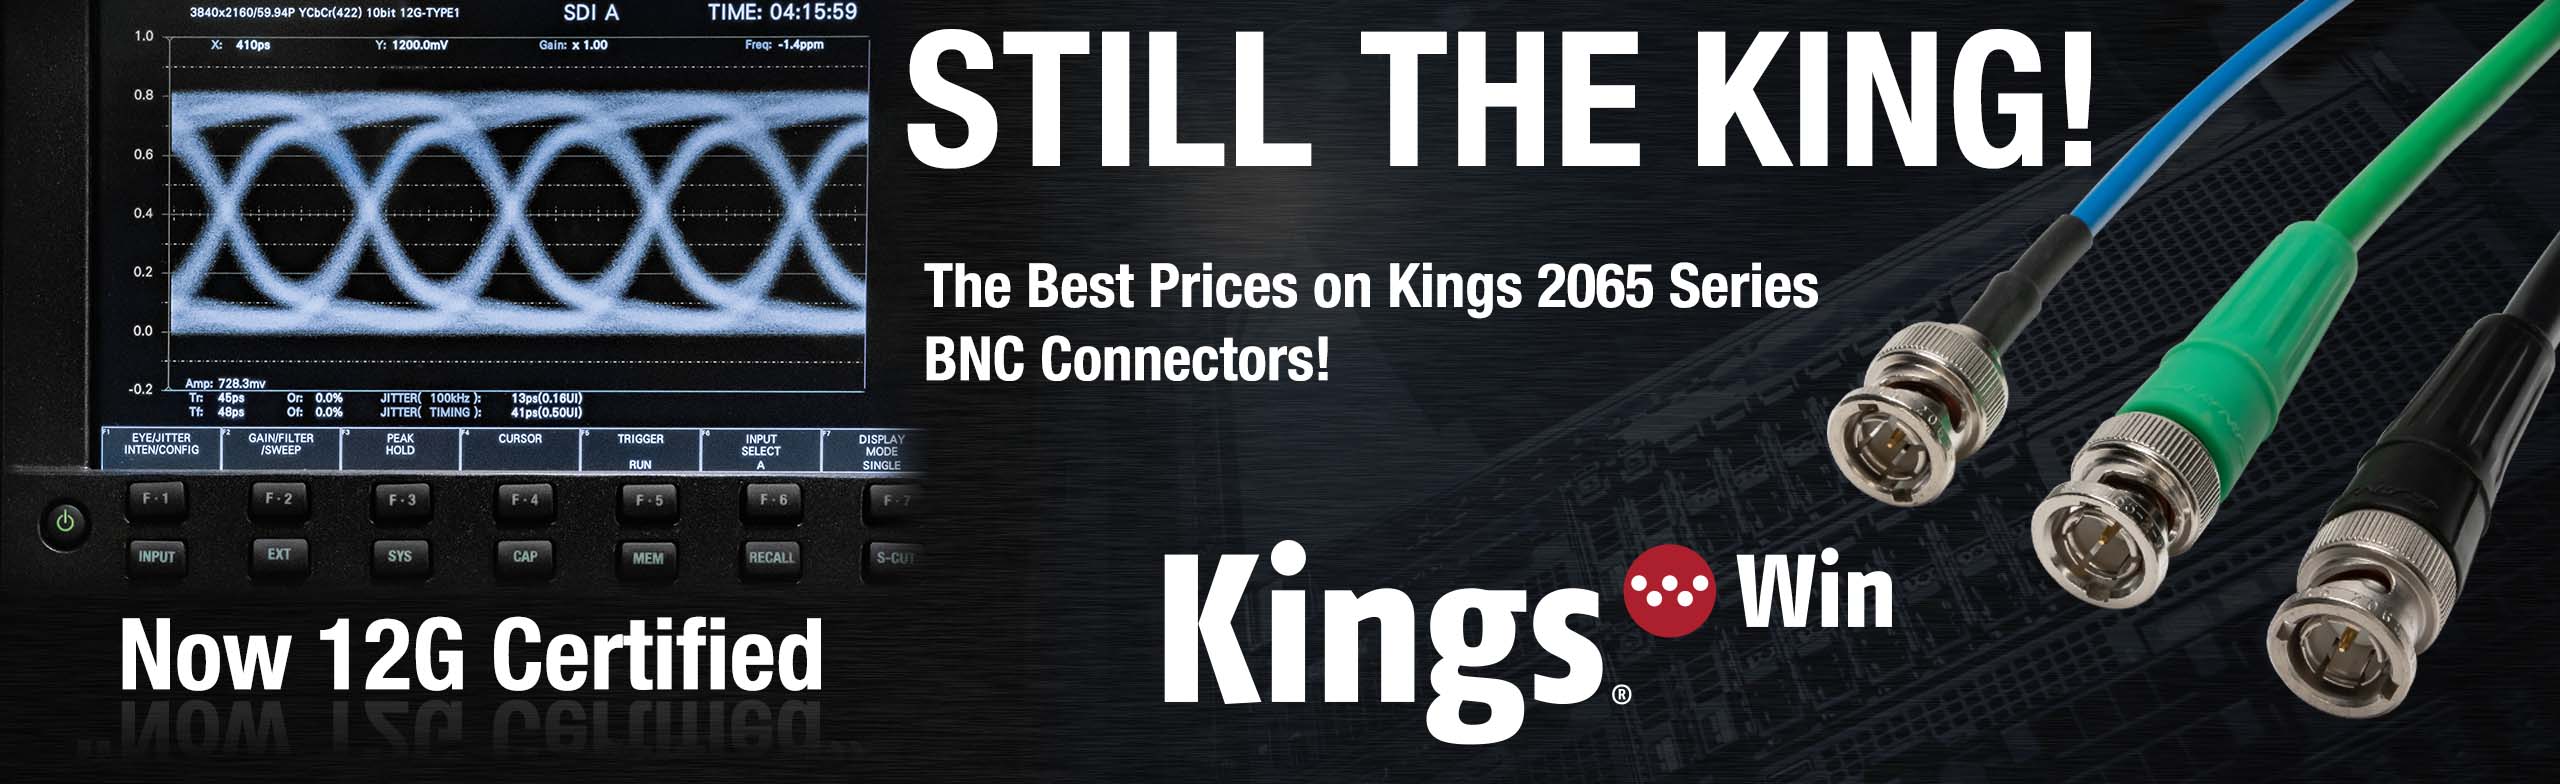 kings 2065 series 12g bnc connectors